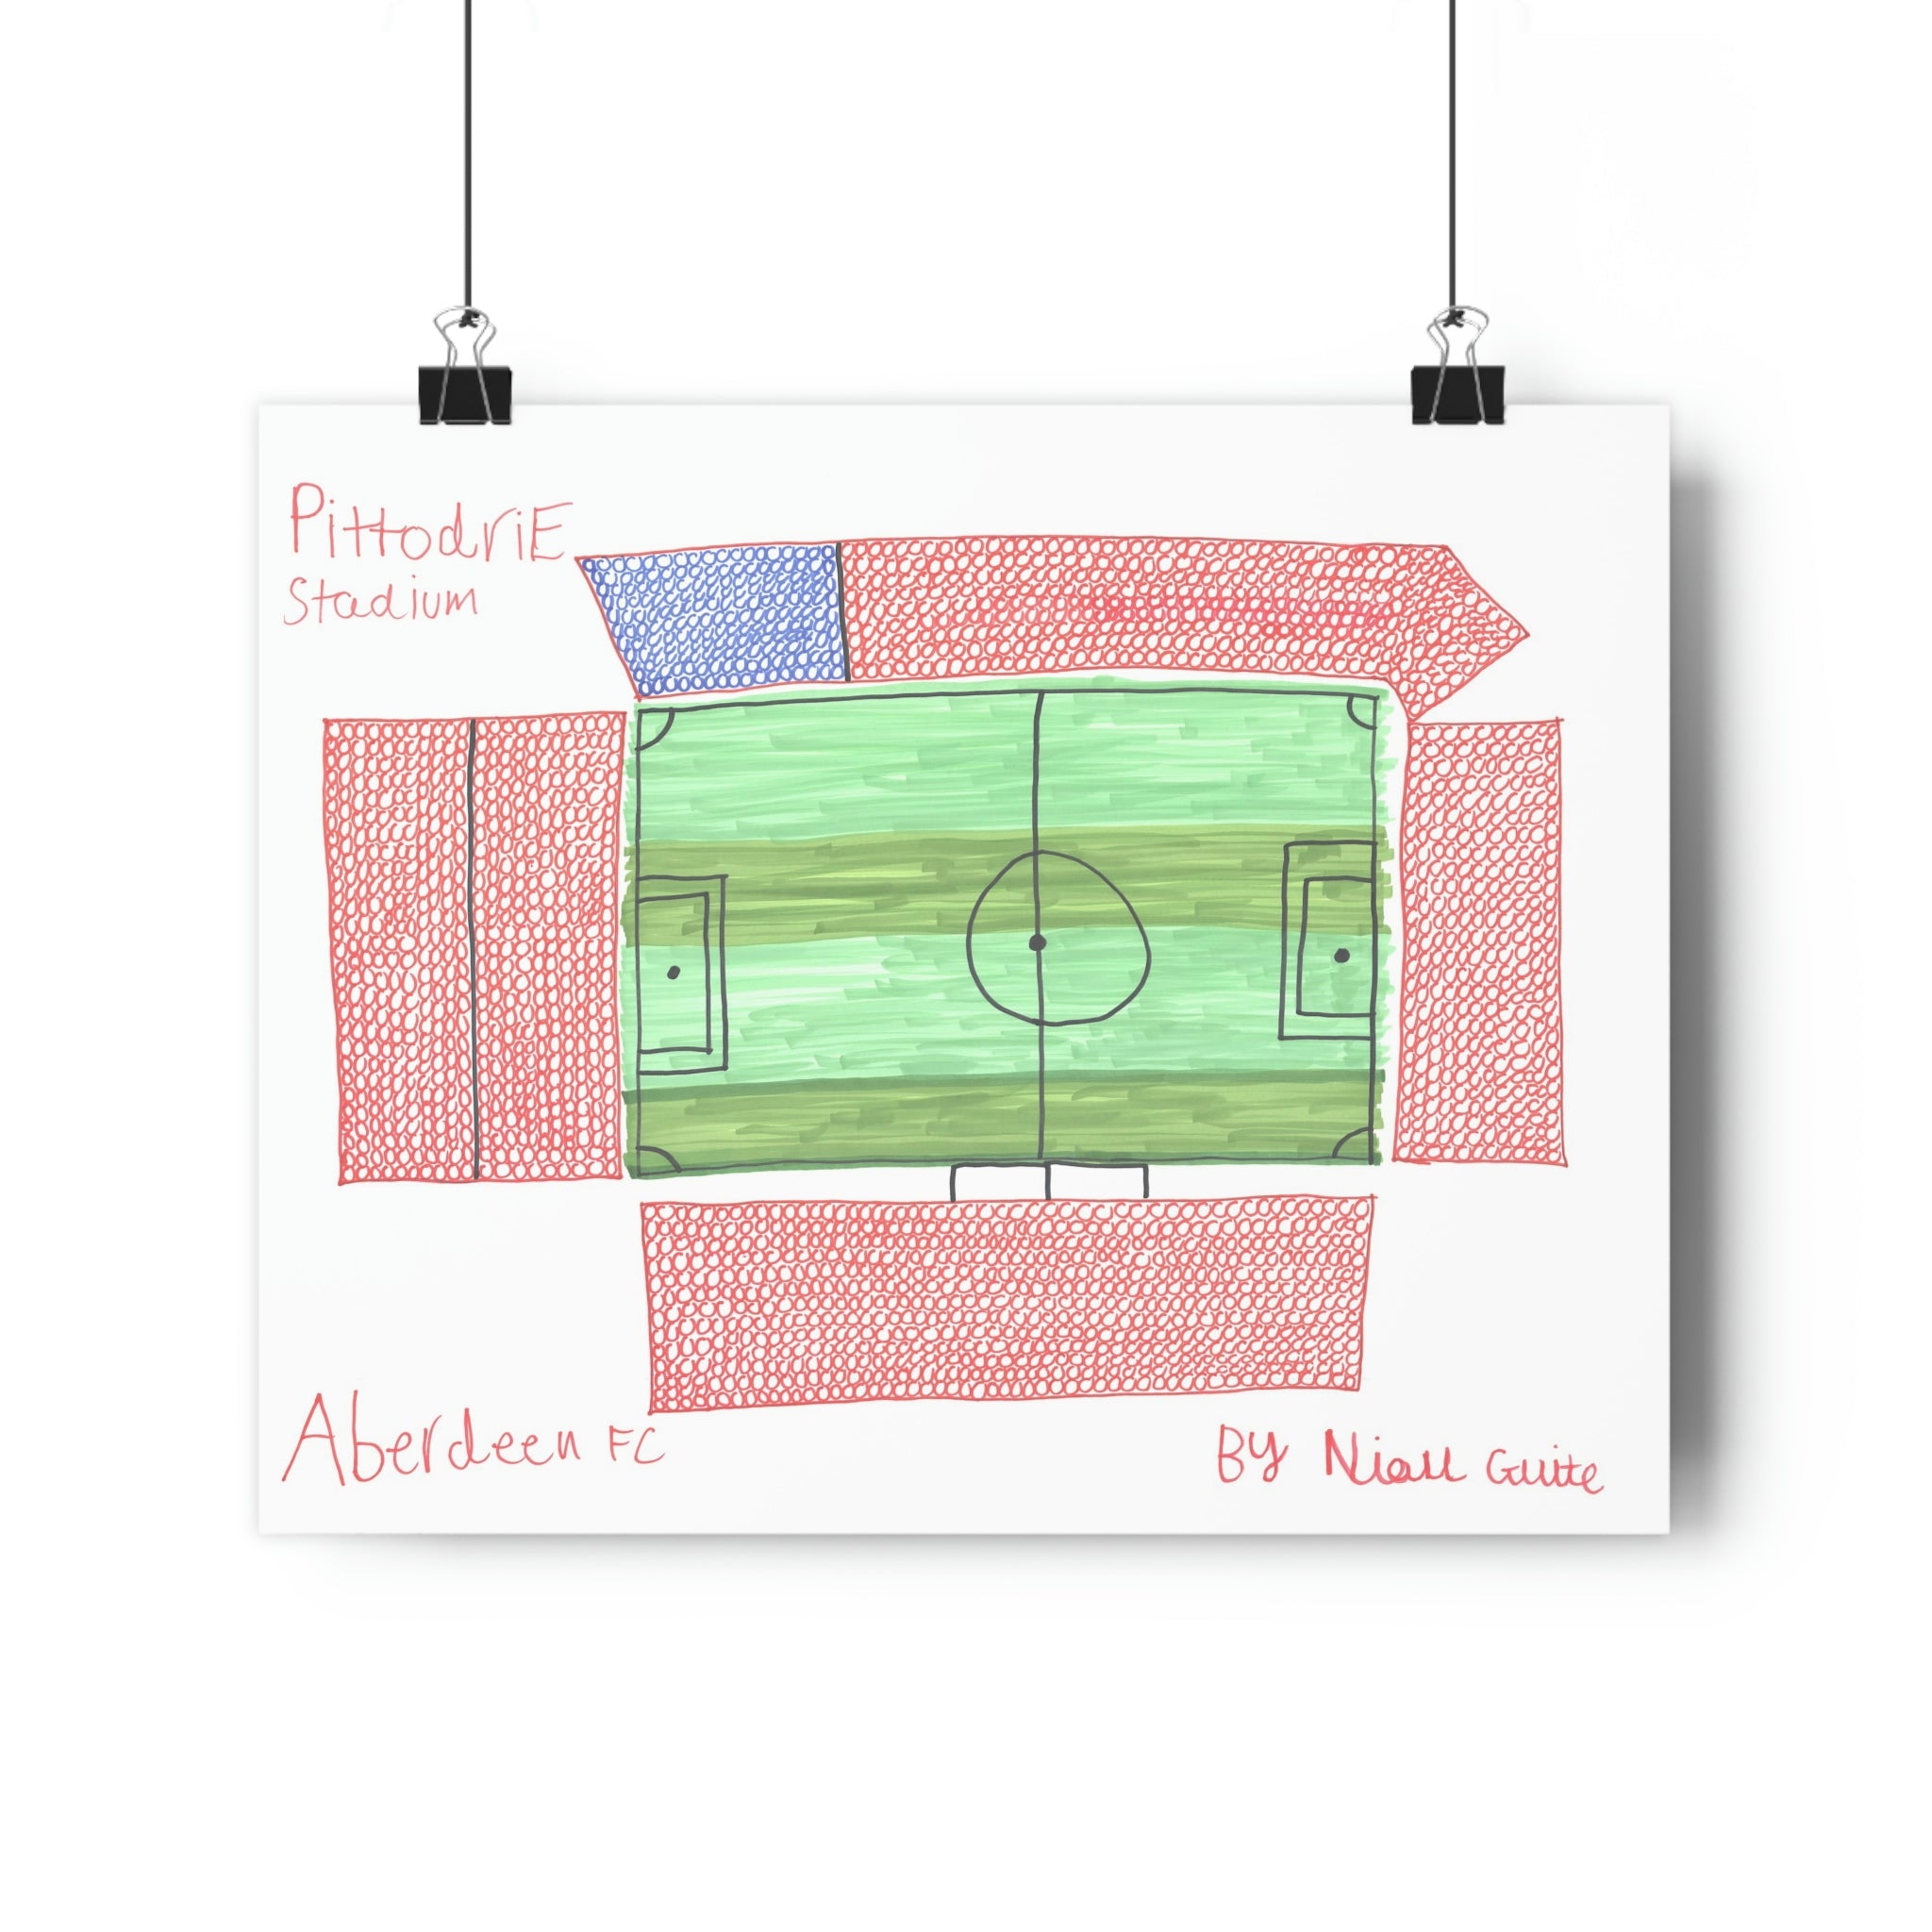 Aberdeen - Pittodrie Stadium - Print